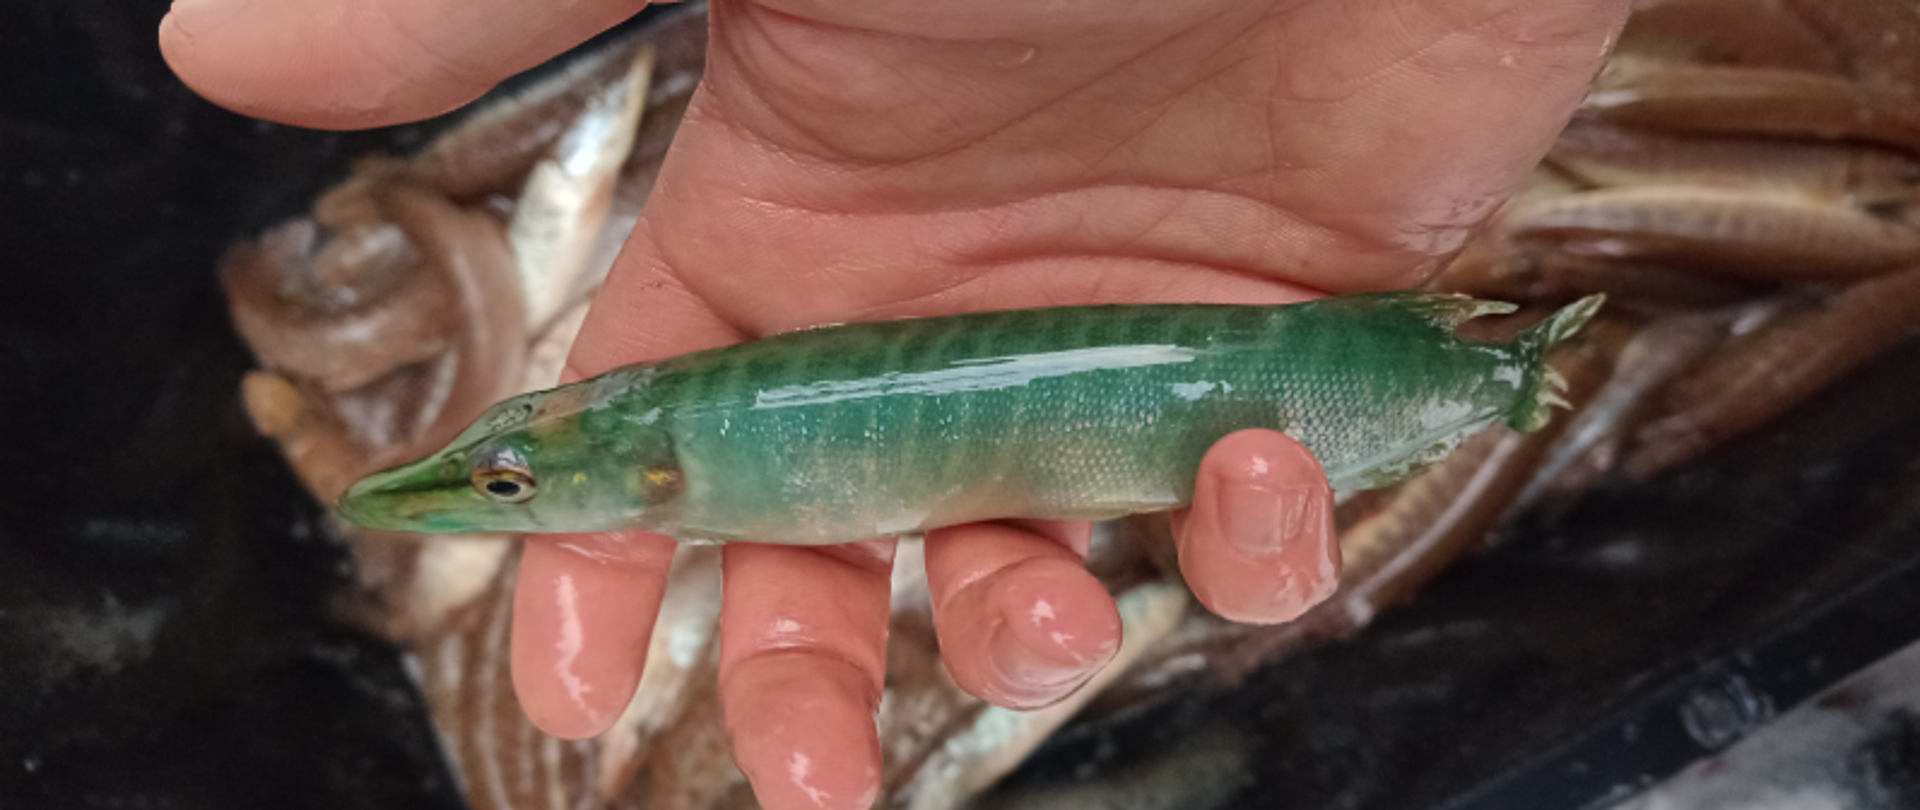 Zarybienia. Mężczyzna trzyma na dłoni małego szczupaka. Jest zielony i opalizujący. W tle pojemnik z większą liczbą ryb. 